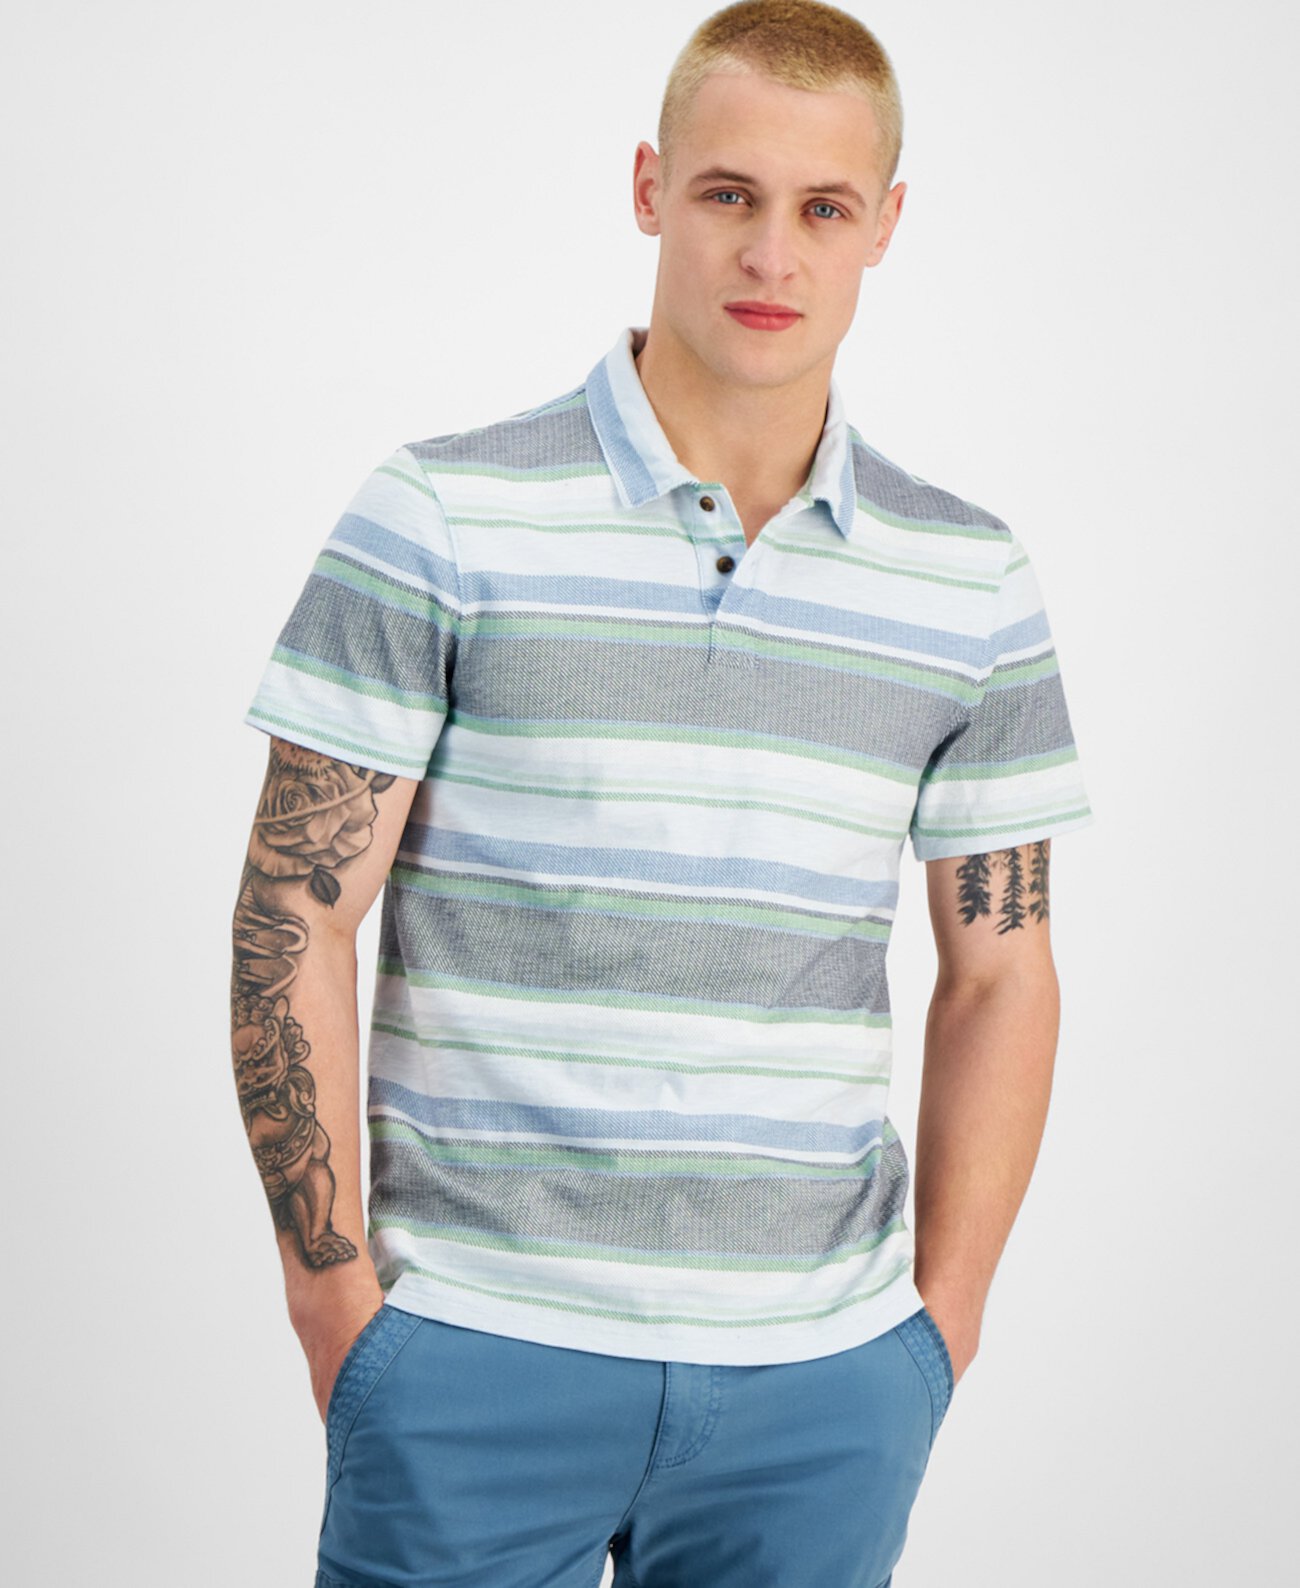 Мужская рубашка-поло с коротким рукавом в полоску Baja, созданная для Macy's Sun & Stone